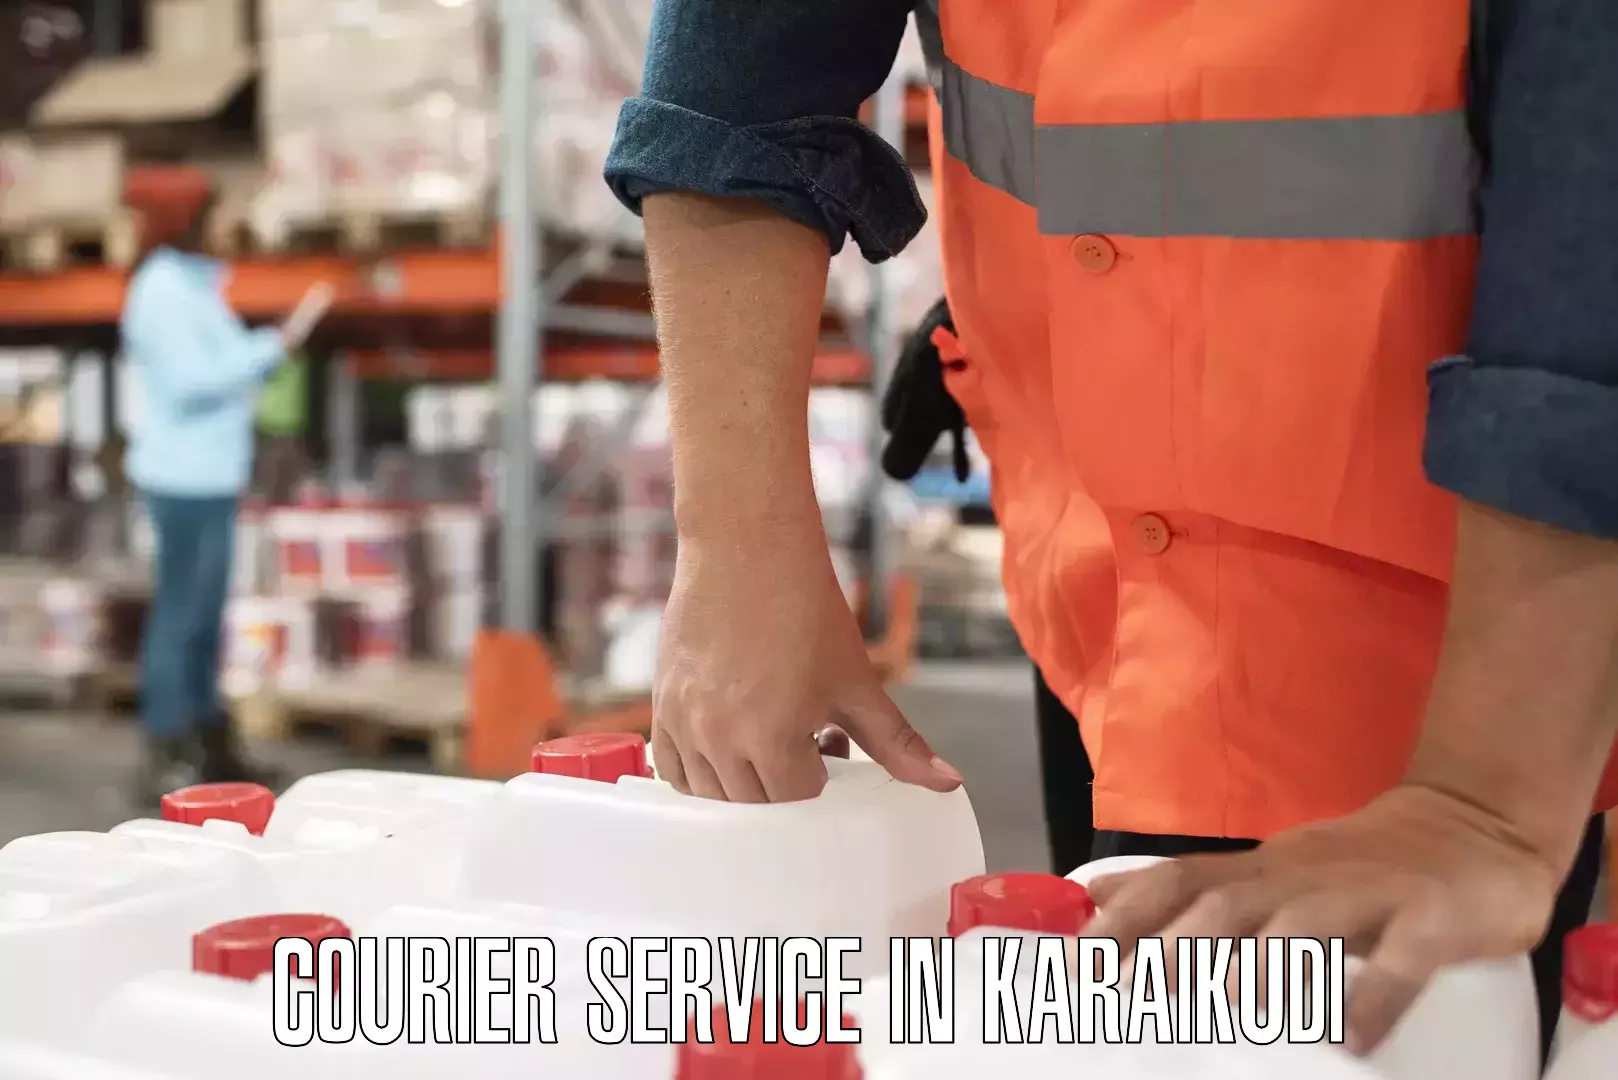 Efficient cargo handling in Karaikudi